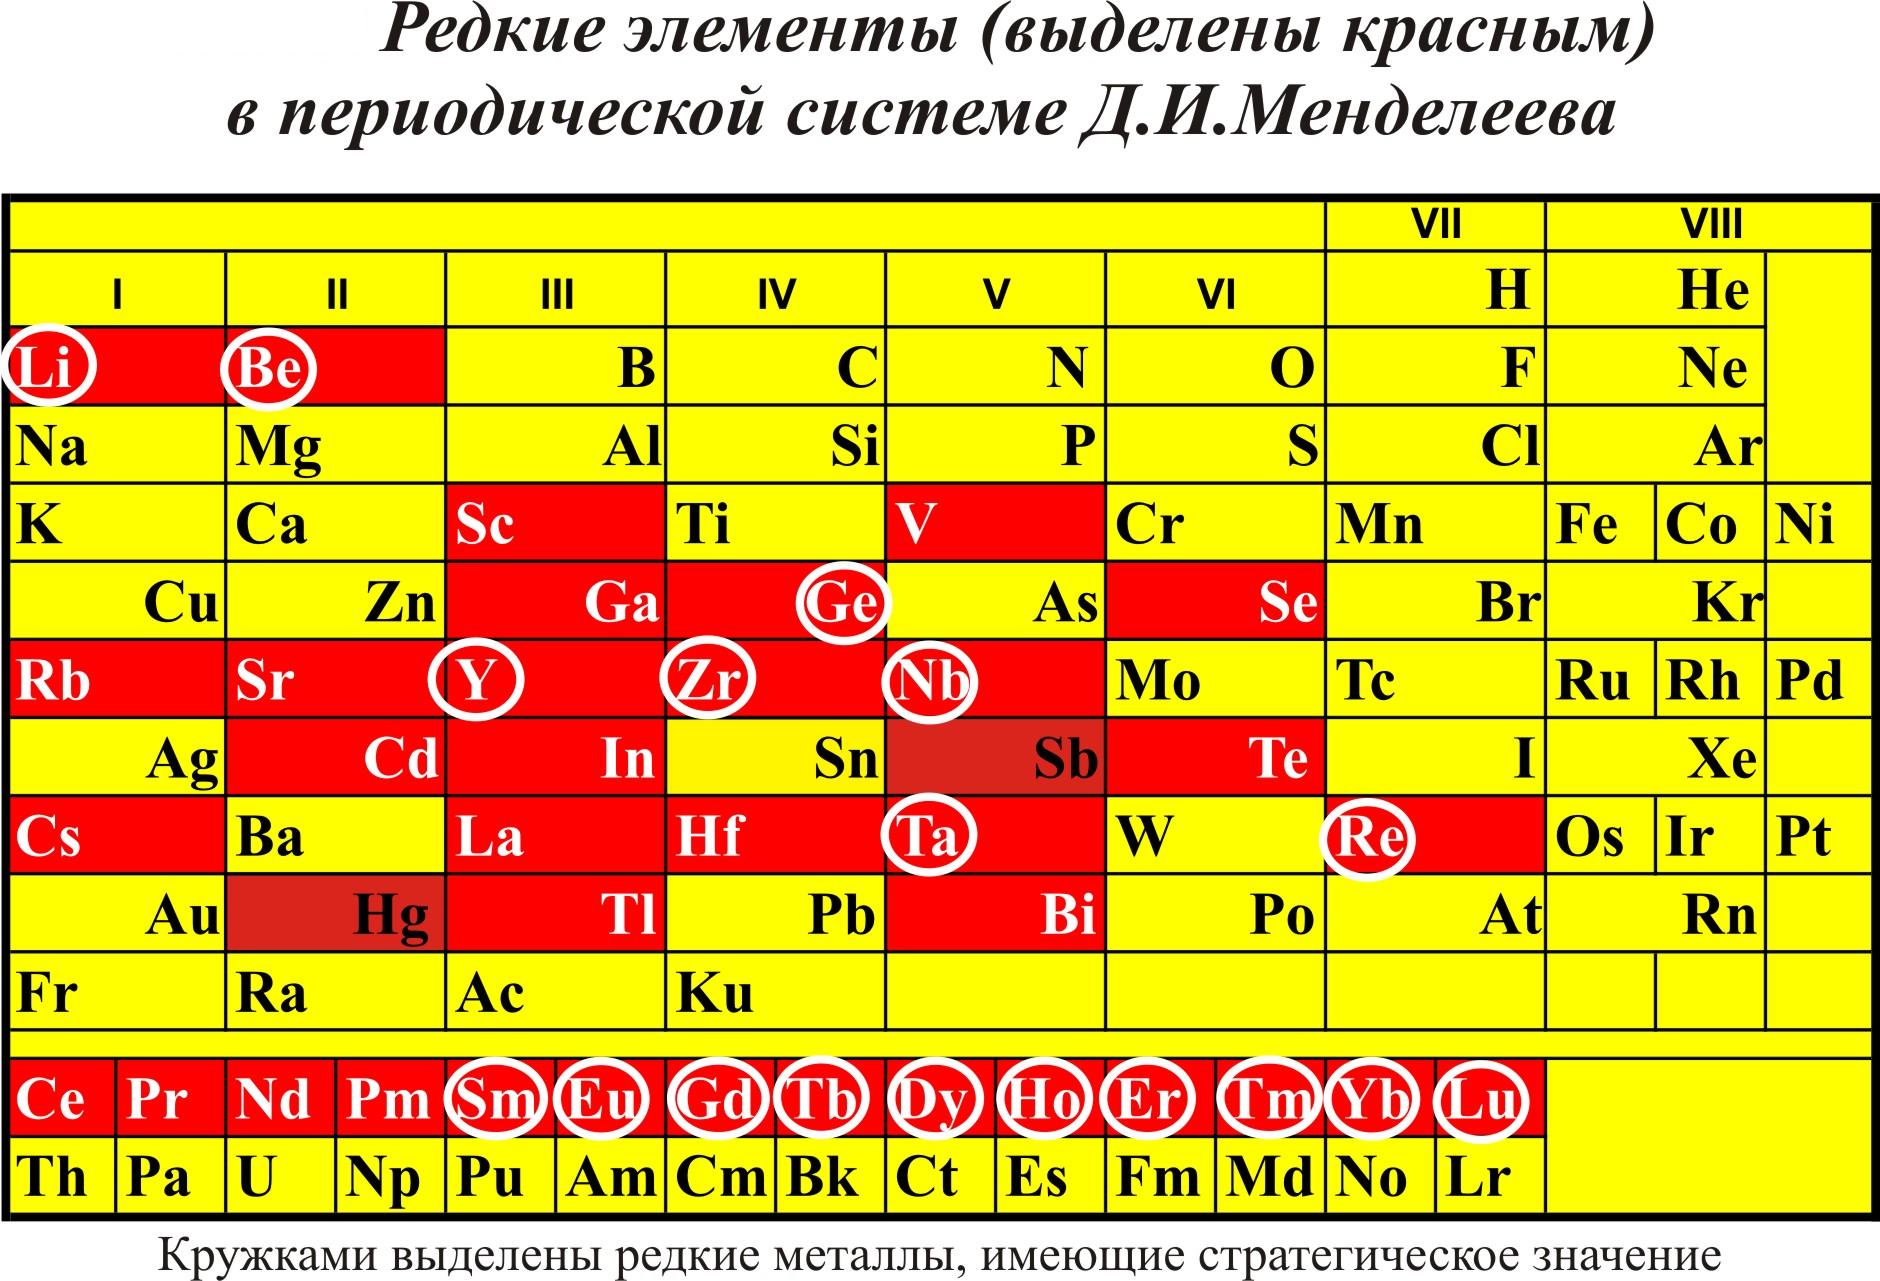 Редкие элементы в периодической системе Д.И.Менделеева